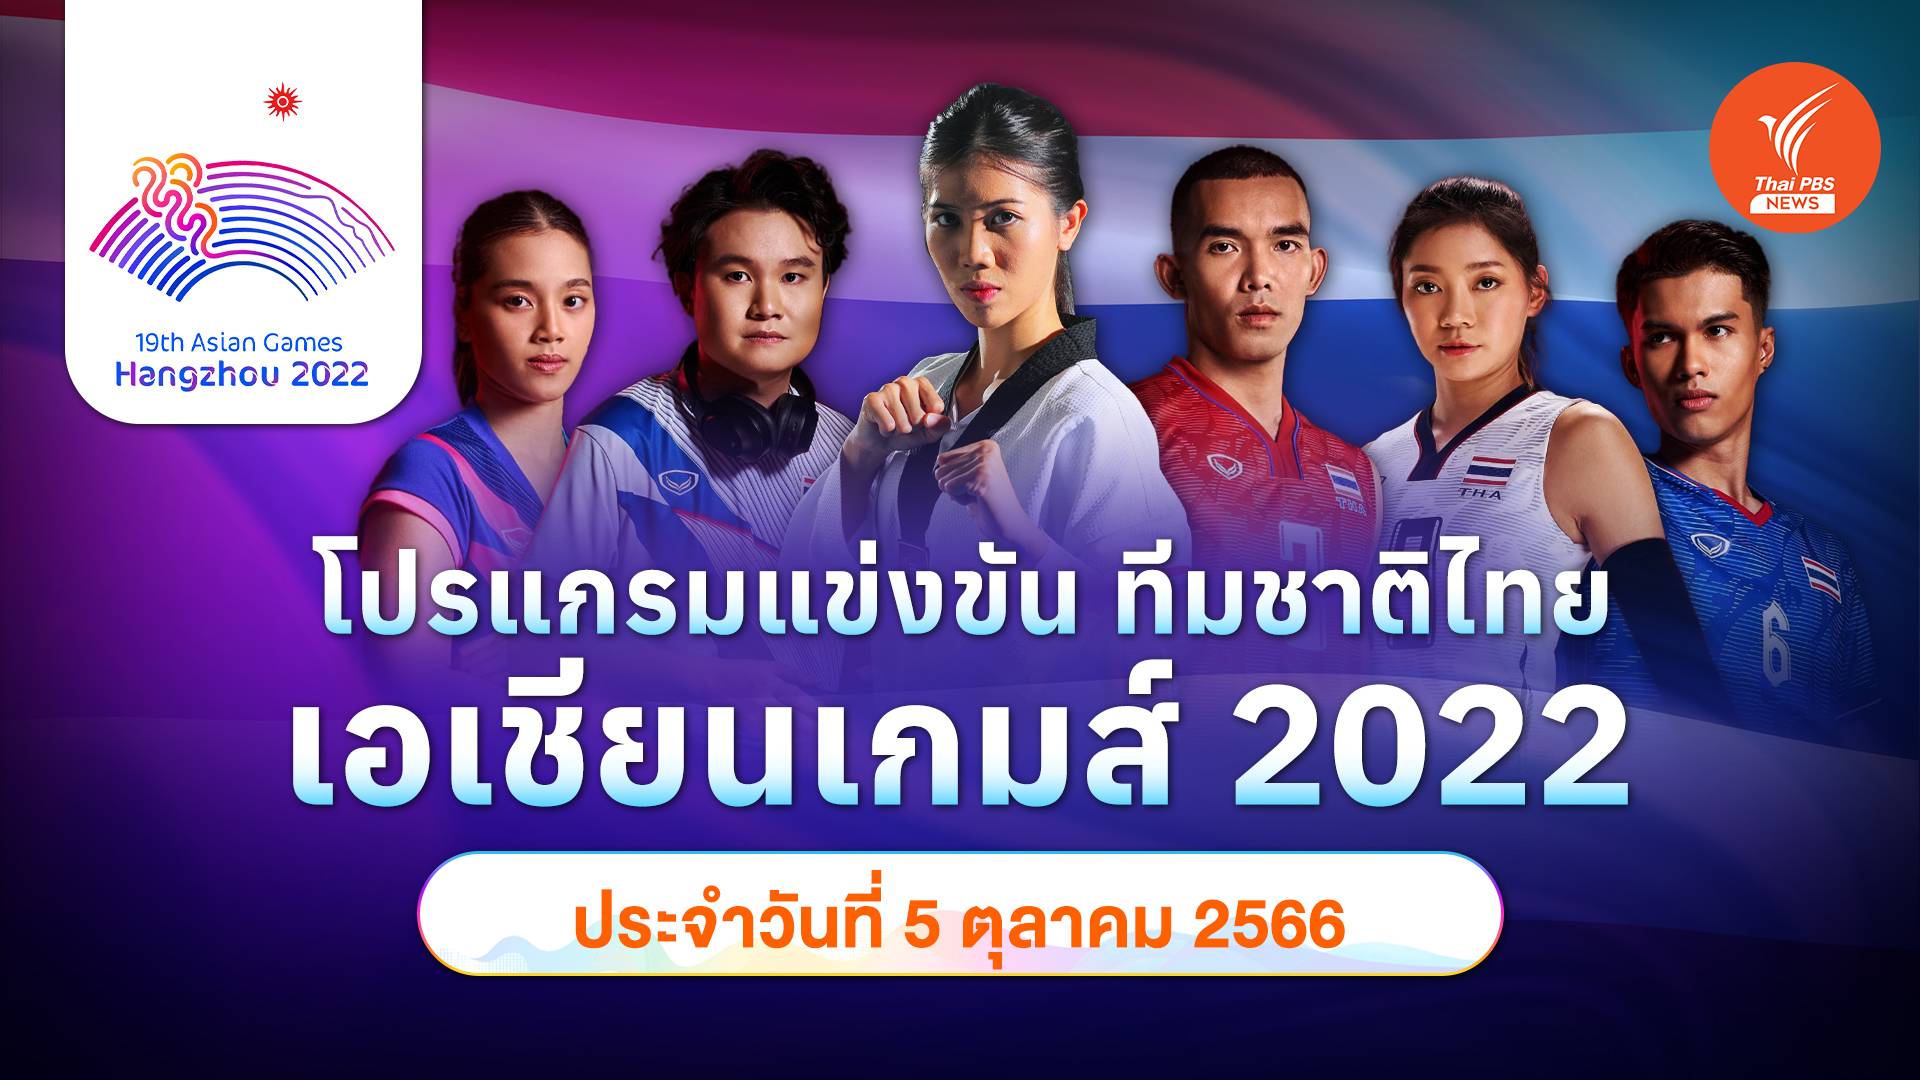 โปรแกรมการแข่งขัน เอเชียนเกมส์ 2022 ทัพนักกีฬาไทย วันที่ 5 ต.ค.2566